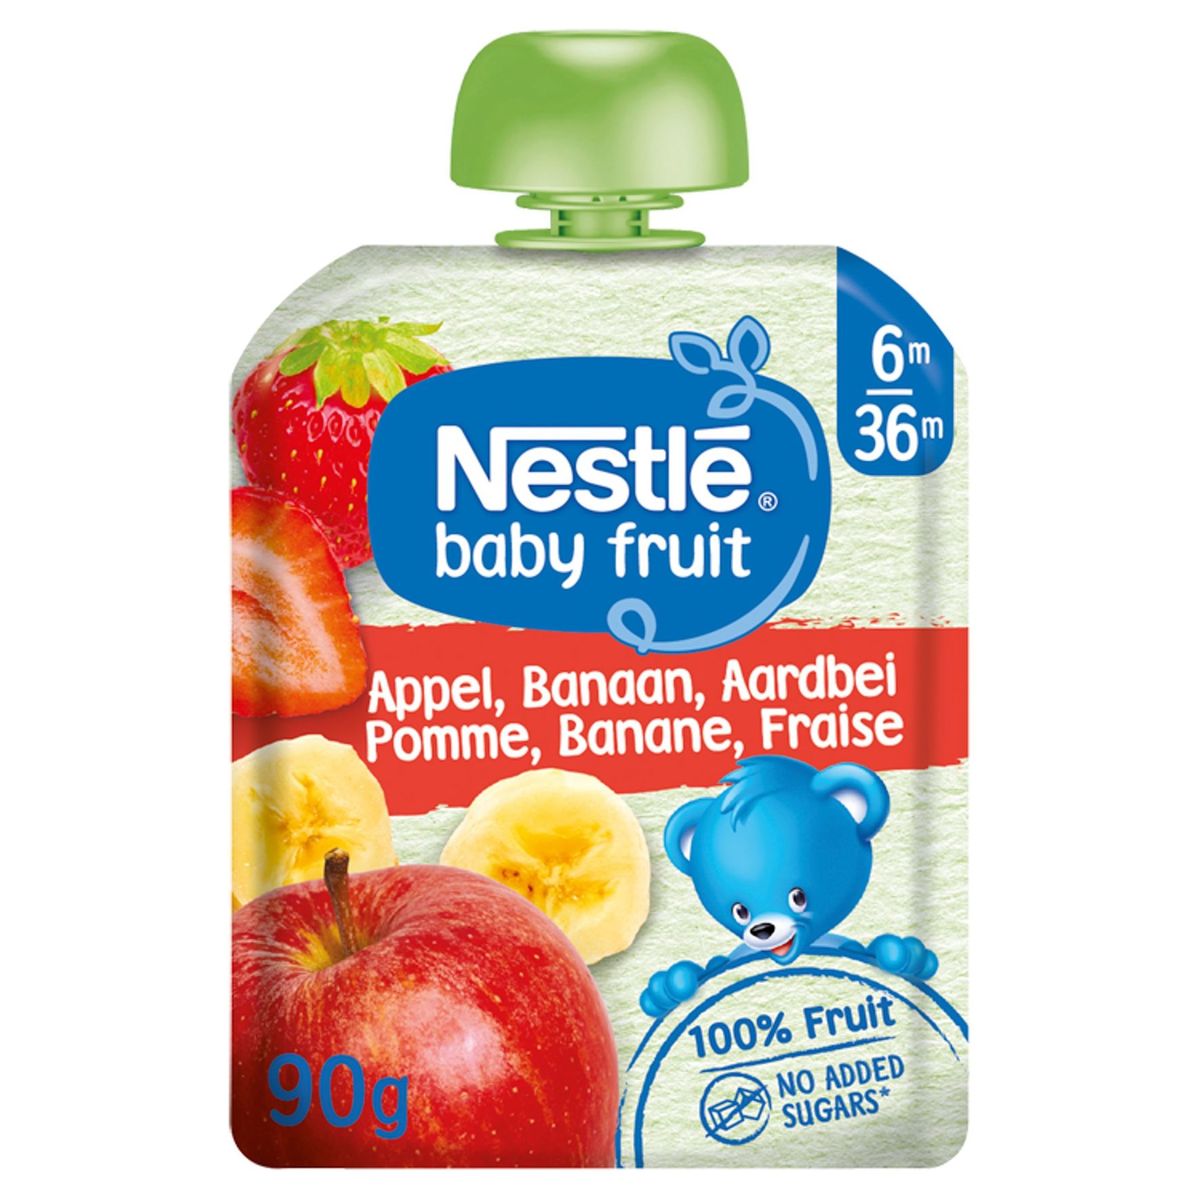 Nestlé Baby Fruit Appel Banaan Aardbei vanaf 6 maanden knijpzakje 90g